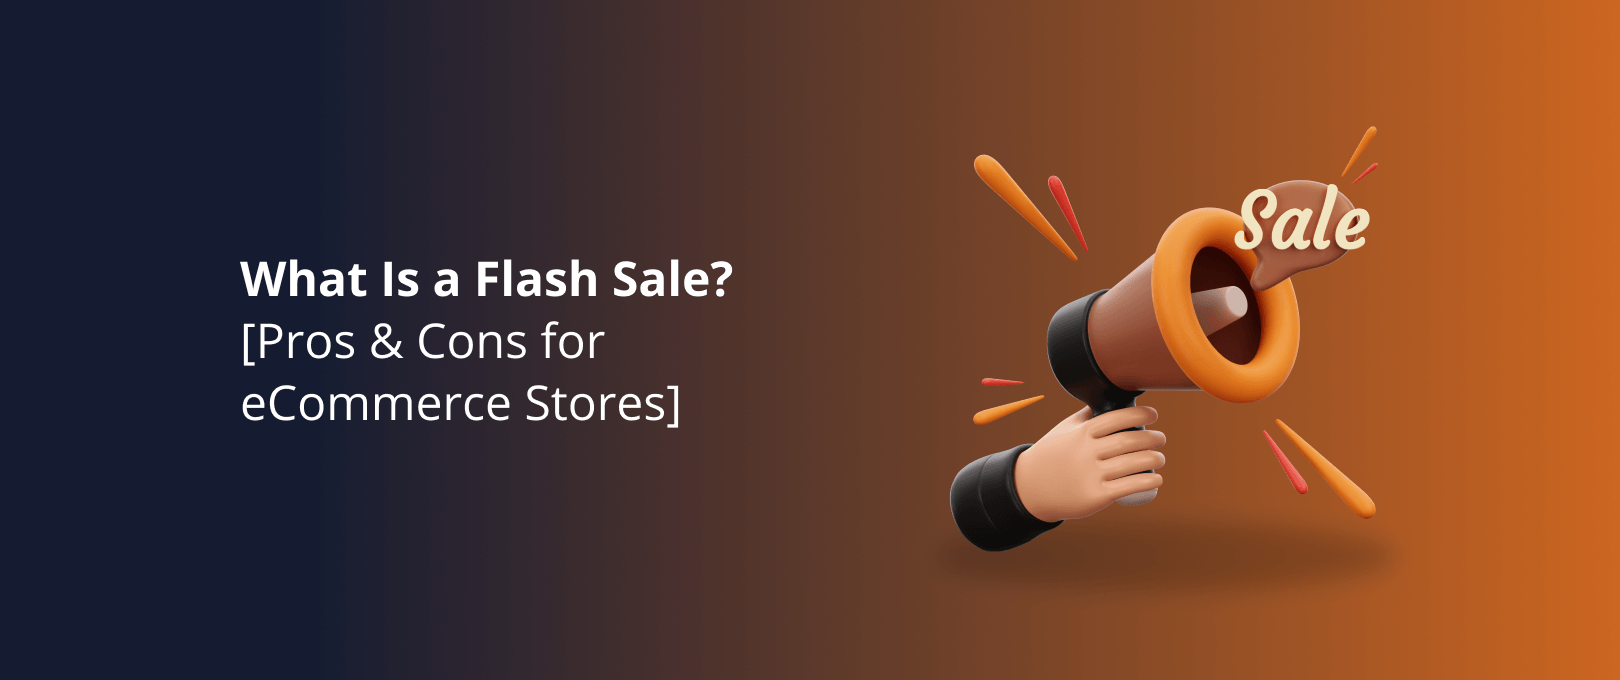 Qué es una venta flash en ecommerce? - Cepymenews